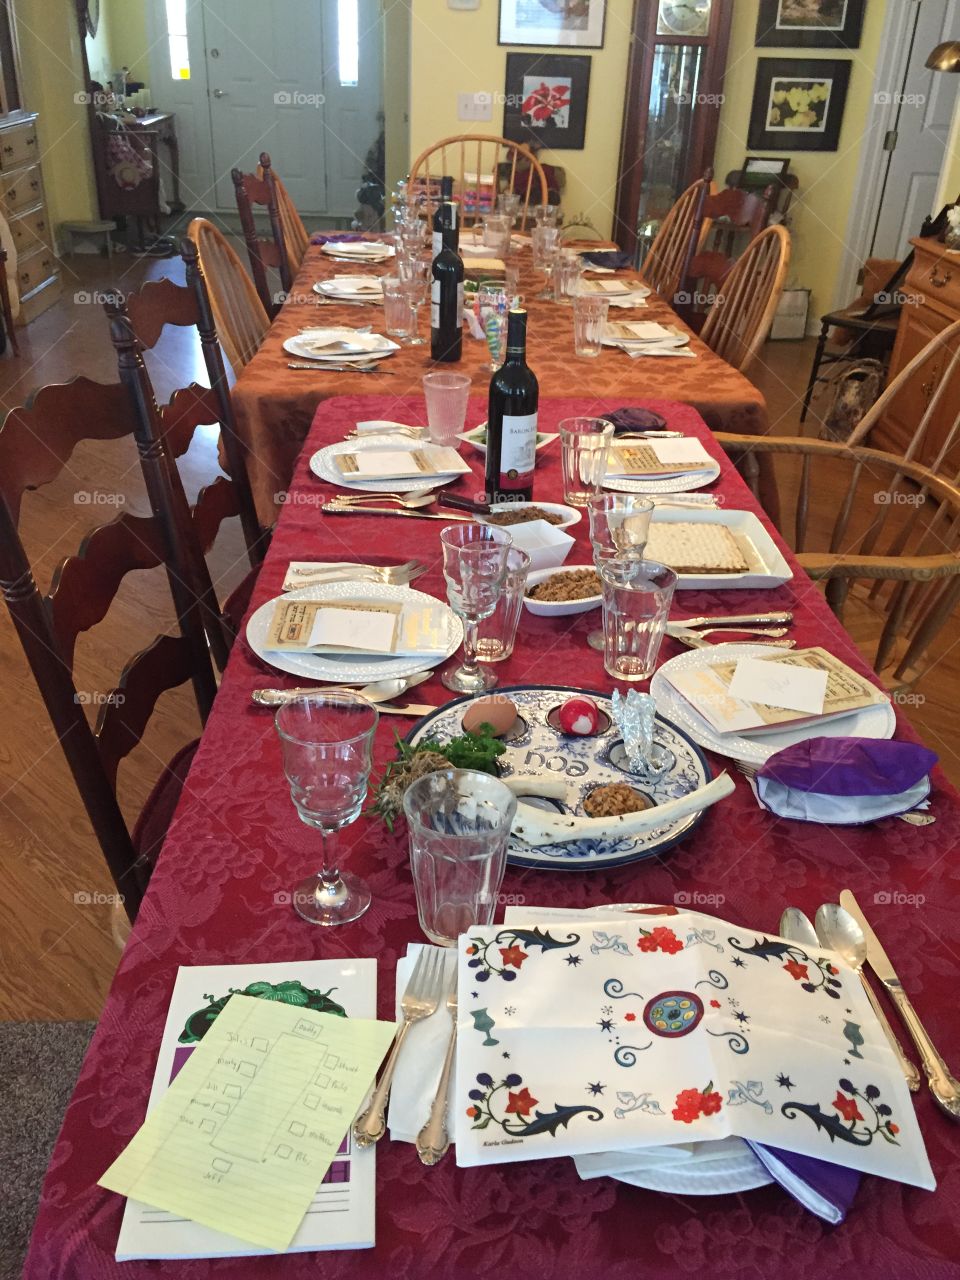 All set for Seder